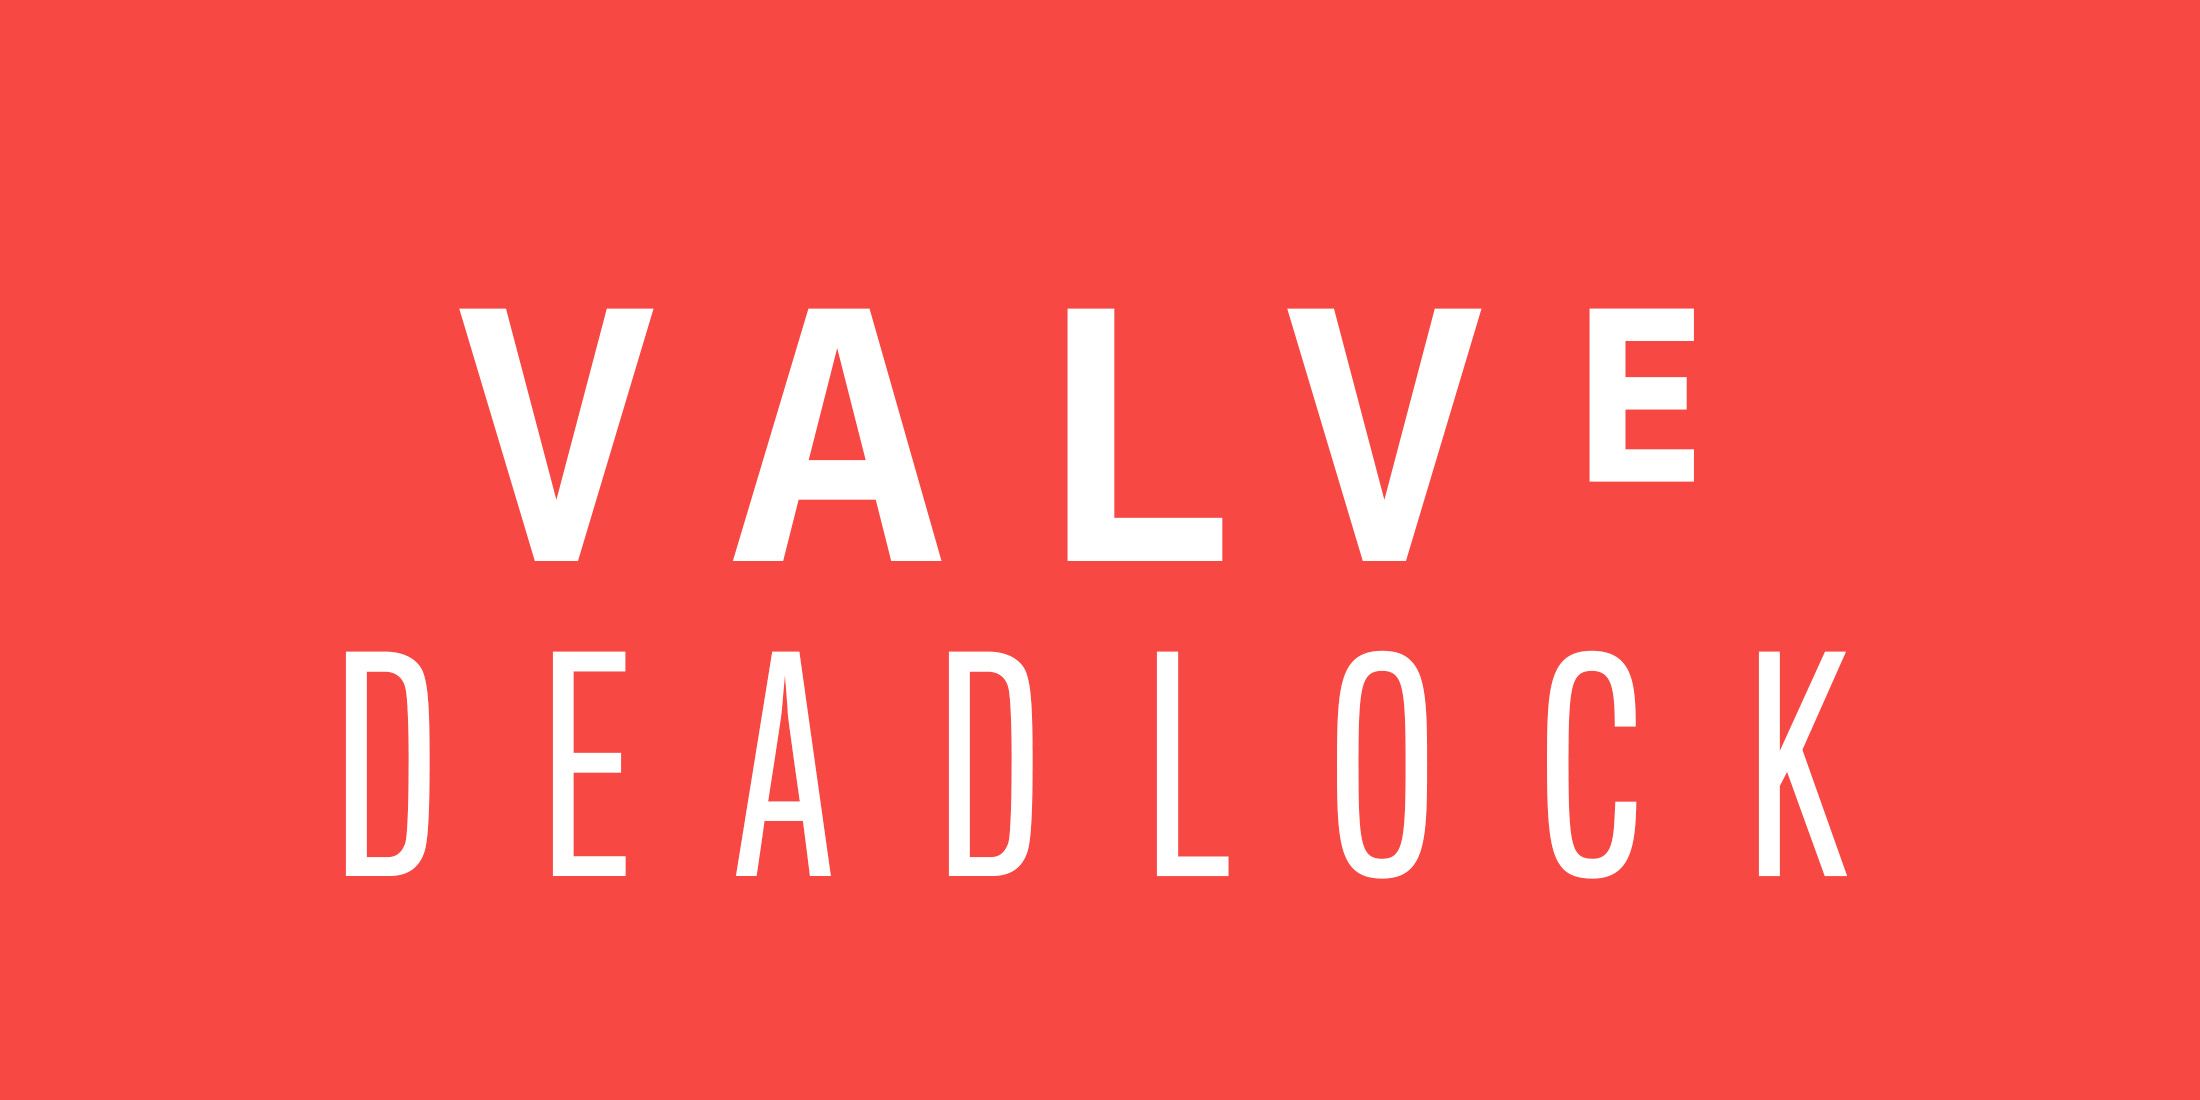 Утечка Deadlock раскрывает всех персонажей и более подробную информацию о следующей игре Valve